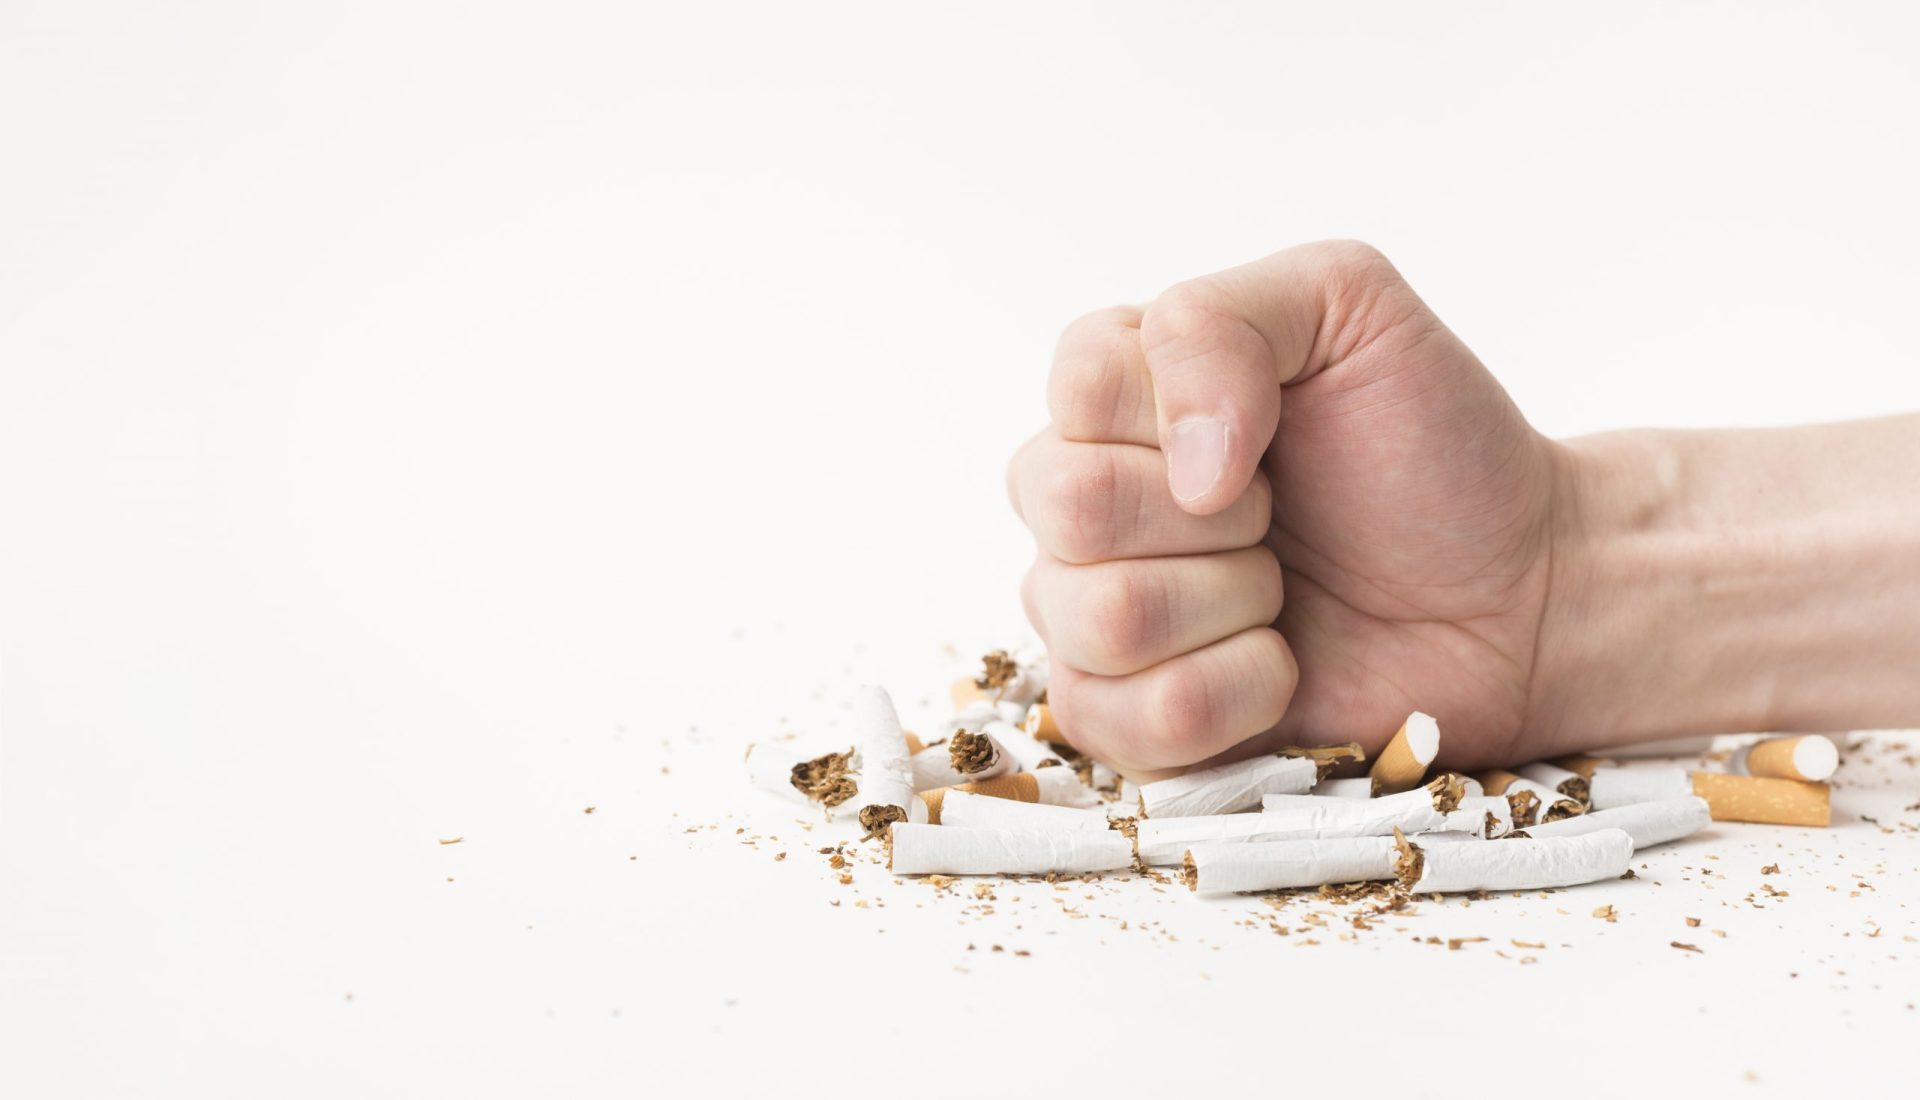 Fumatul creste riscul impotentei cu 50% - Sănătate > Sistemul imunitar - cronodent.ro